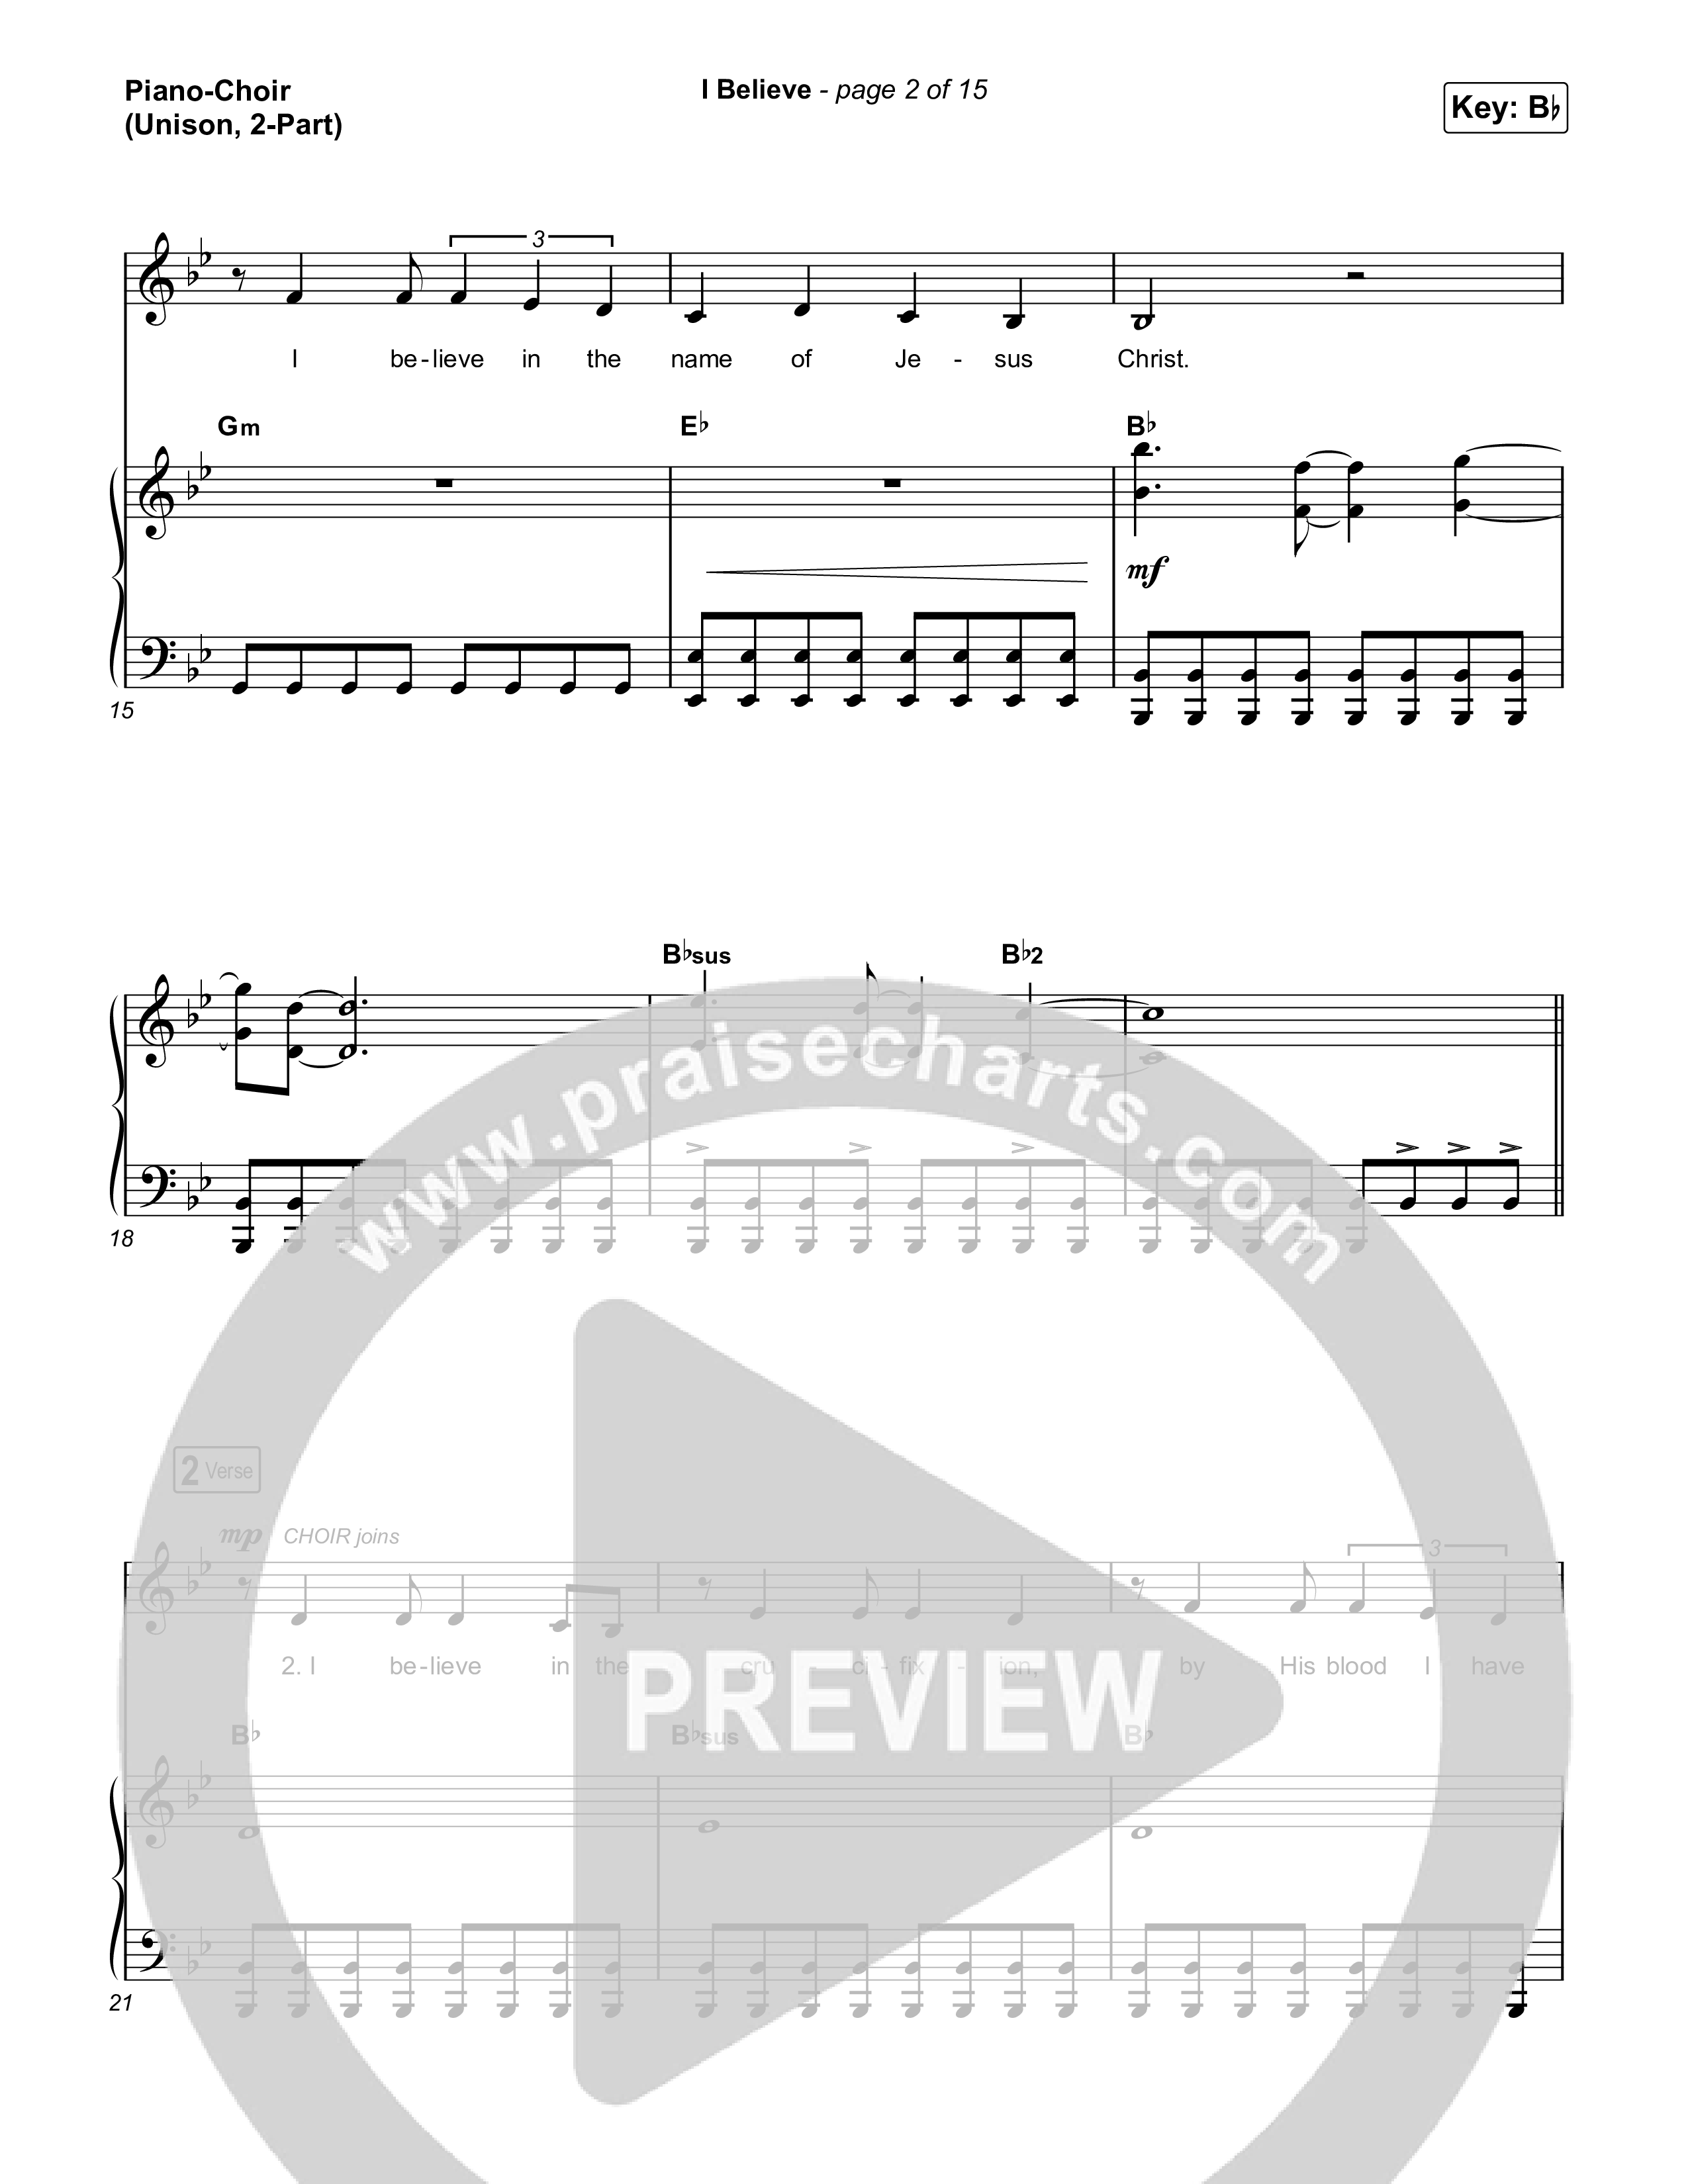 I Believe (Unison/2-Part) Piano/Choir  (Uni/2-Part) (Phil Wickham)